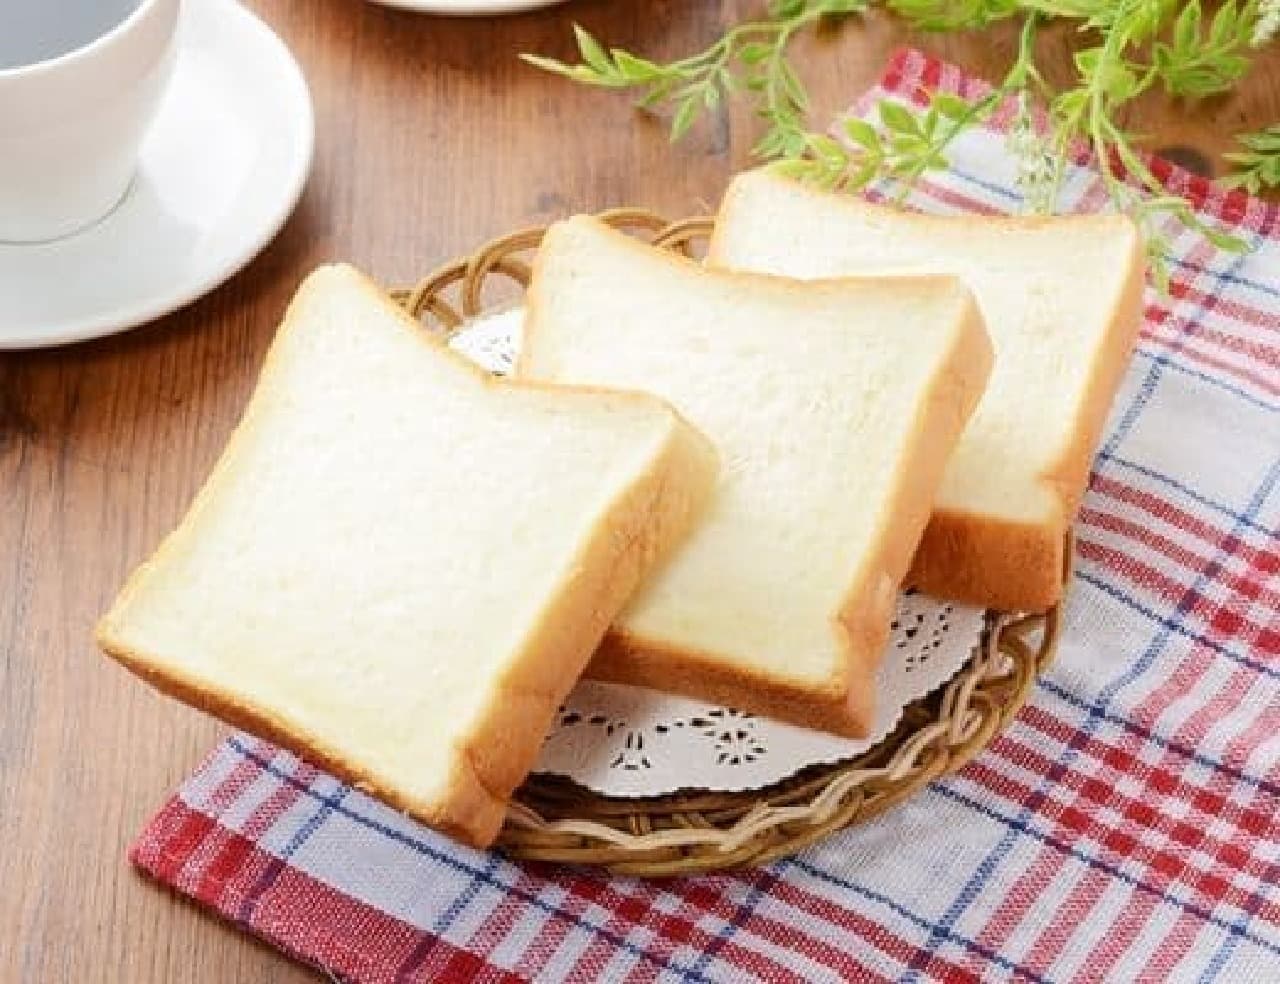 Lawson "Machino Bread Fluffy Soft Mini Bread 3 Pieces"